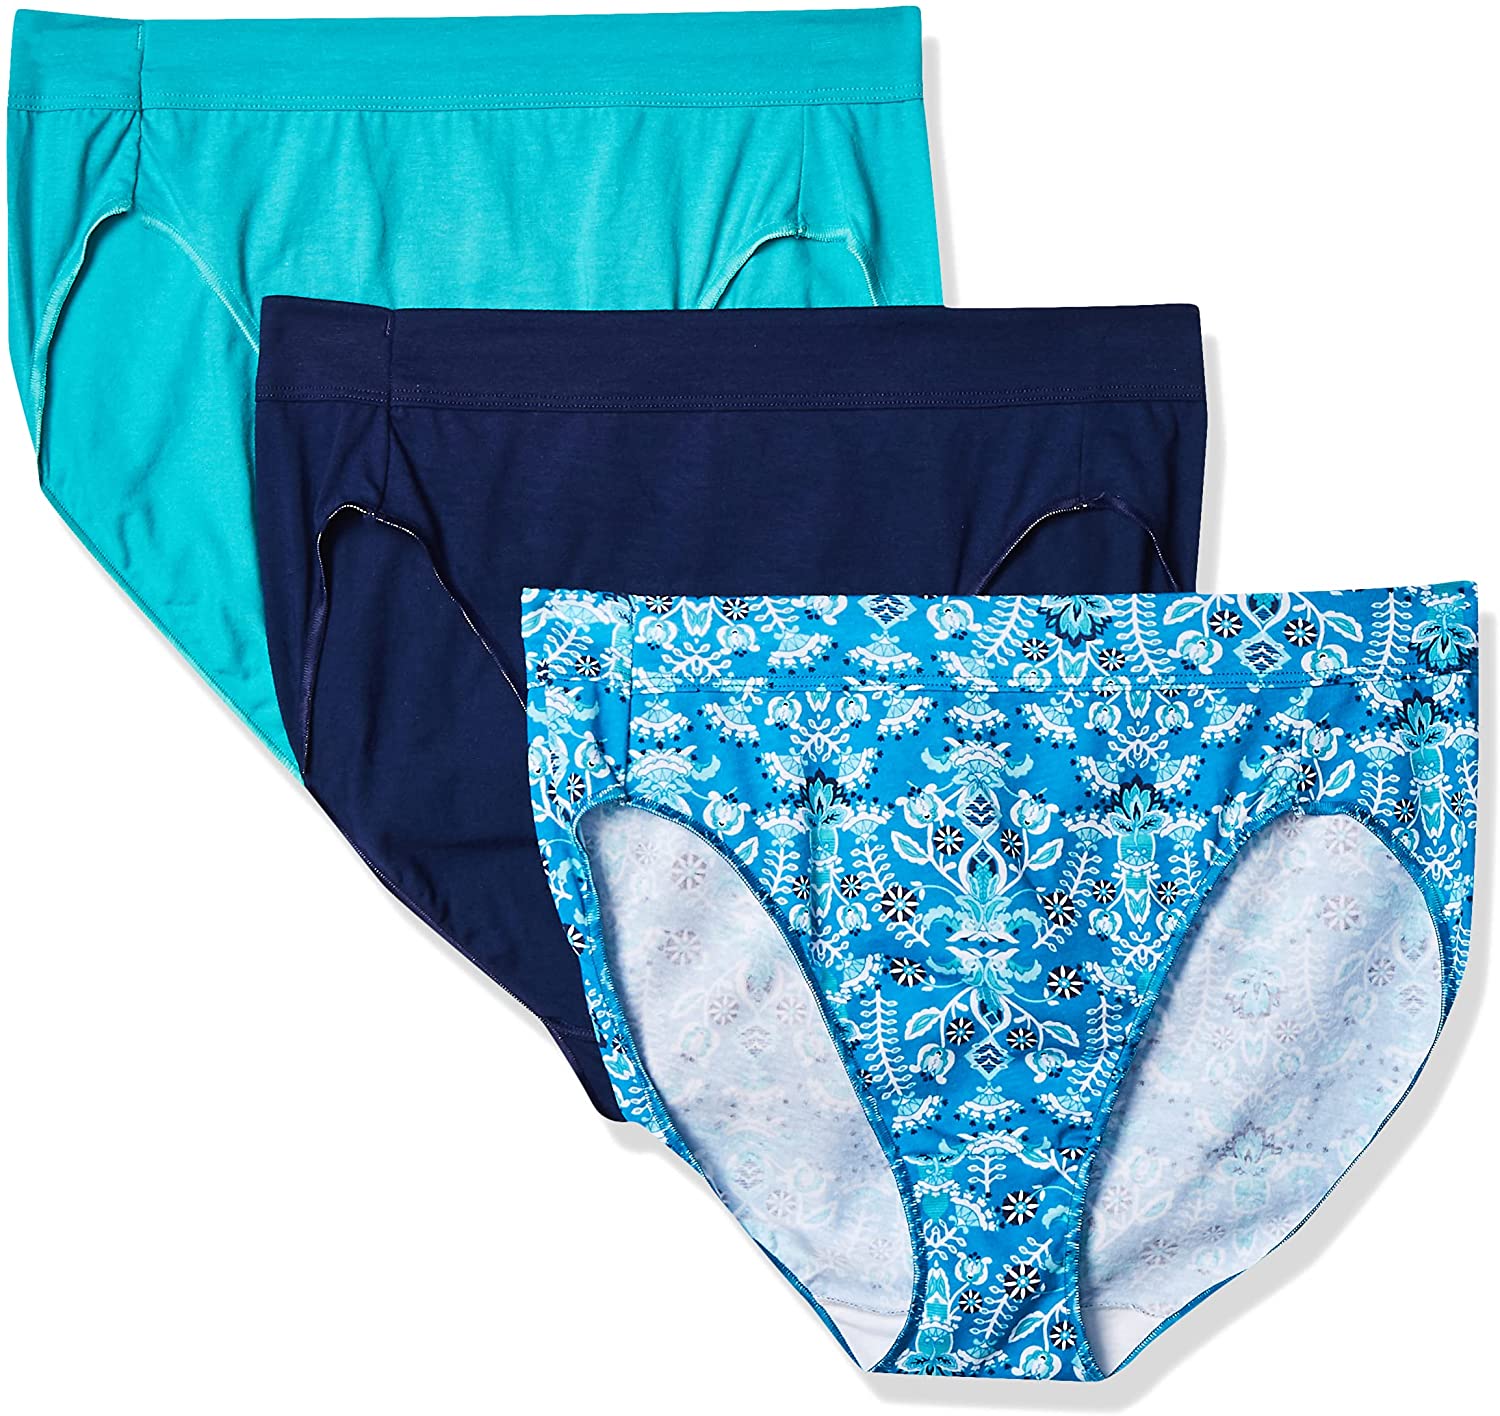 Hanes Women's Constant Comfort X-Temp Hipster Panties, 3+1 Pack 